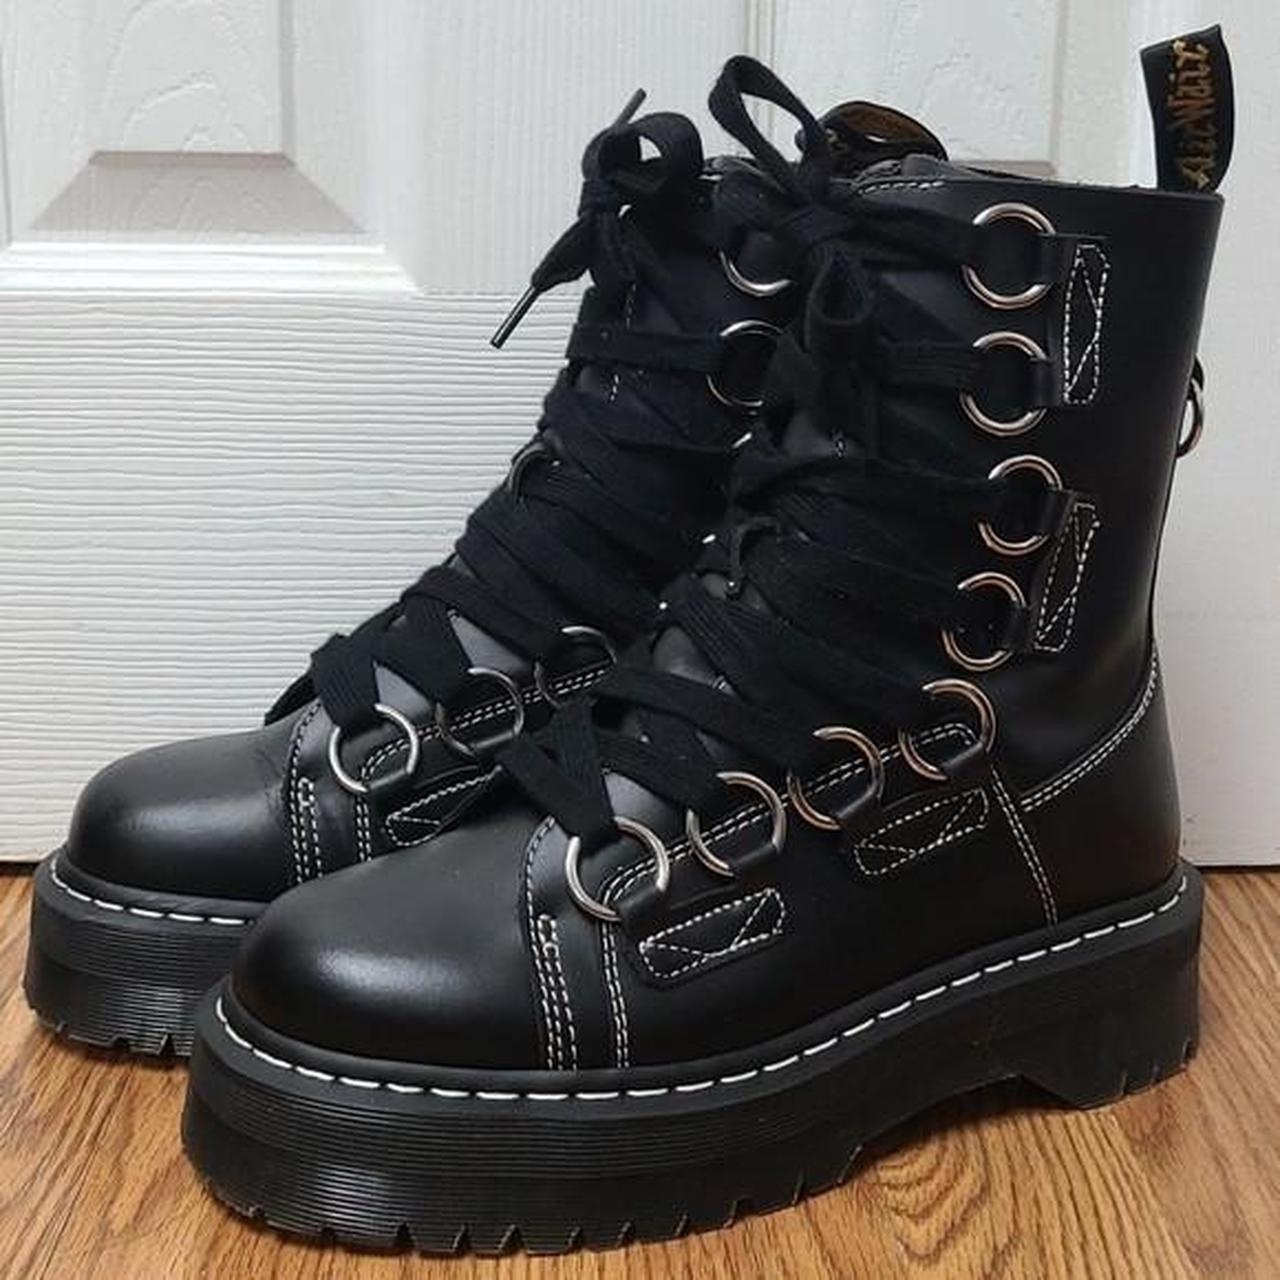 BAIT Footwear Romona in Black Size US 10 * Wear - Depop